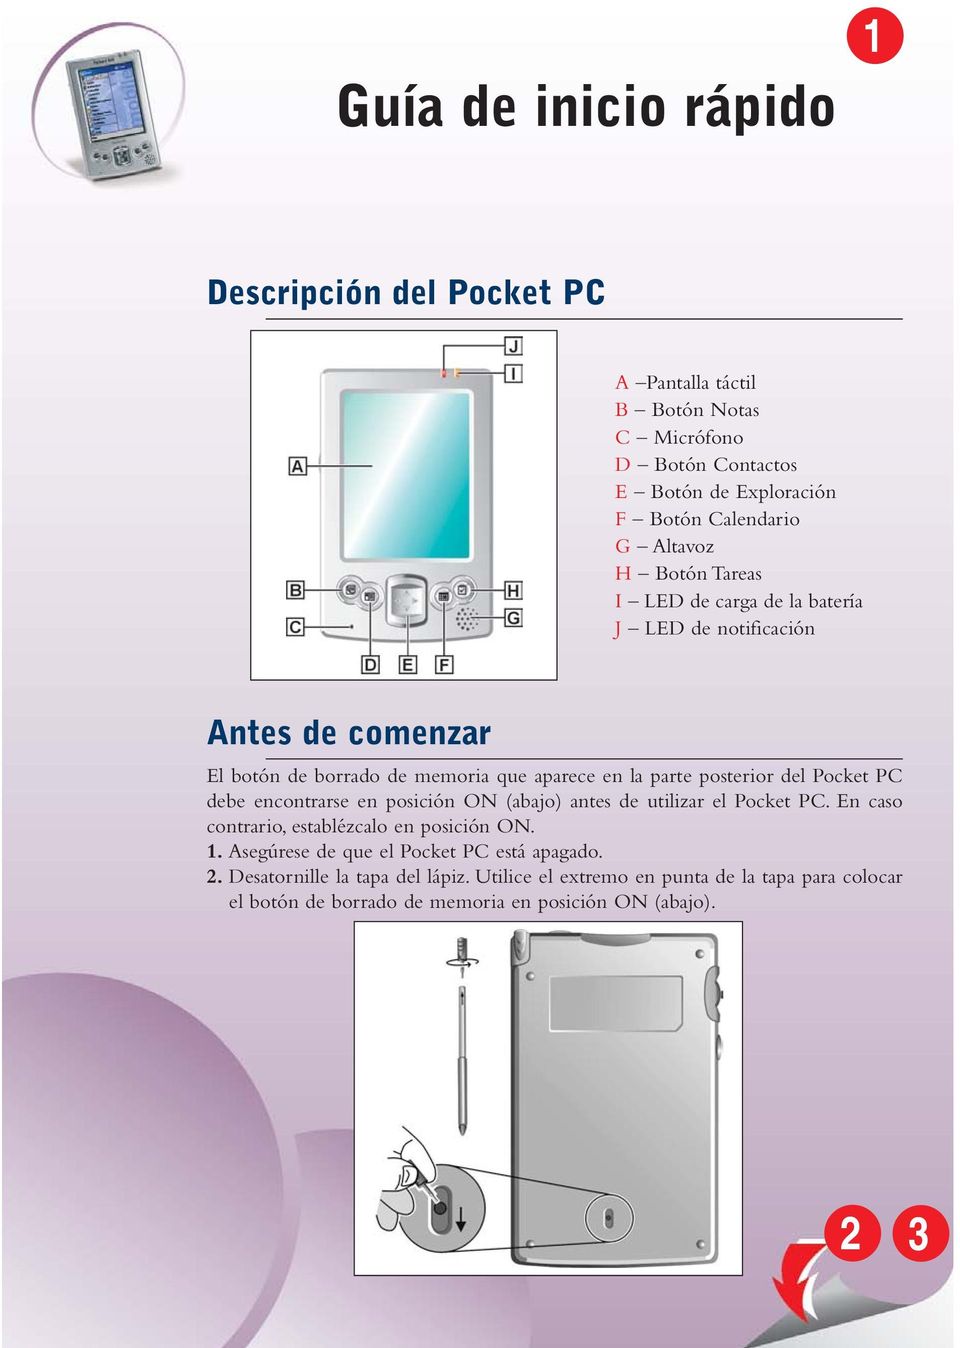 del Pocket PC debe encontrarse en posición ON (abajo) antes de utilizar el Pocket PC. En caso contrario, establézcalo en posición ON. 1.